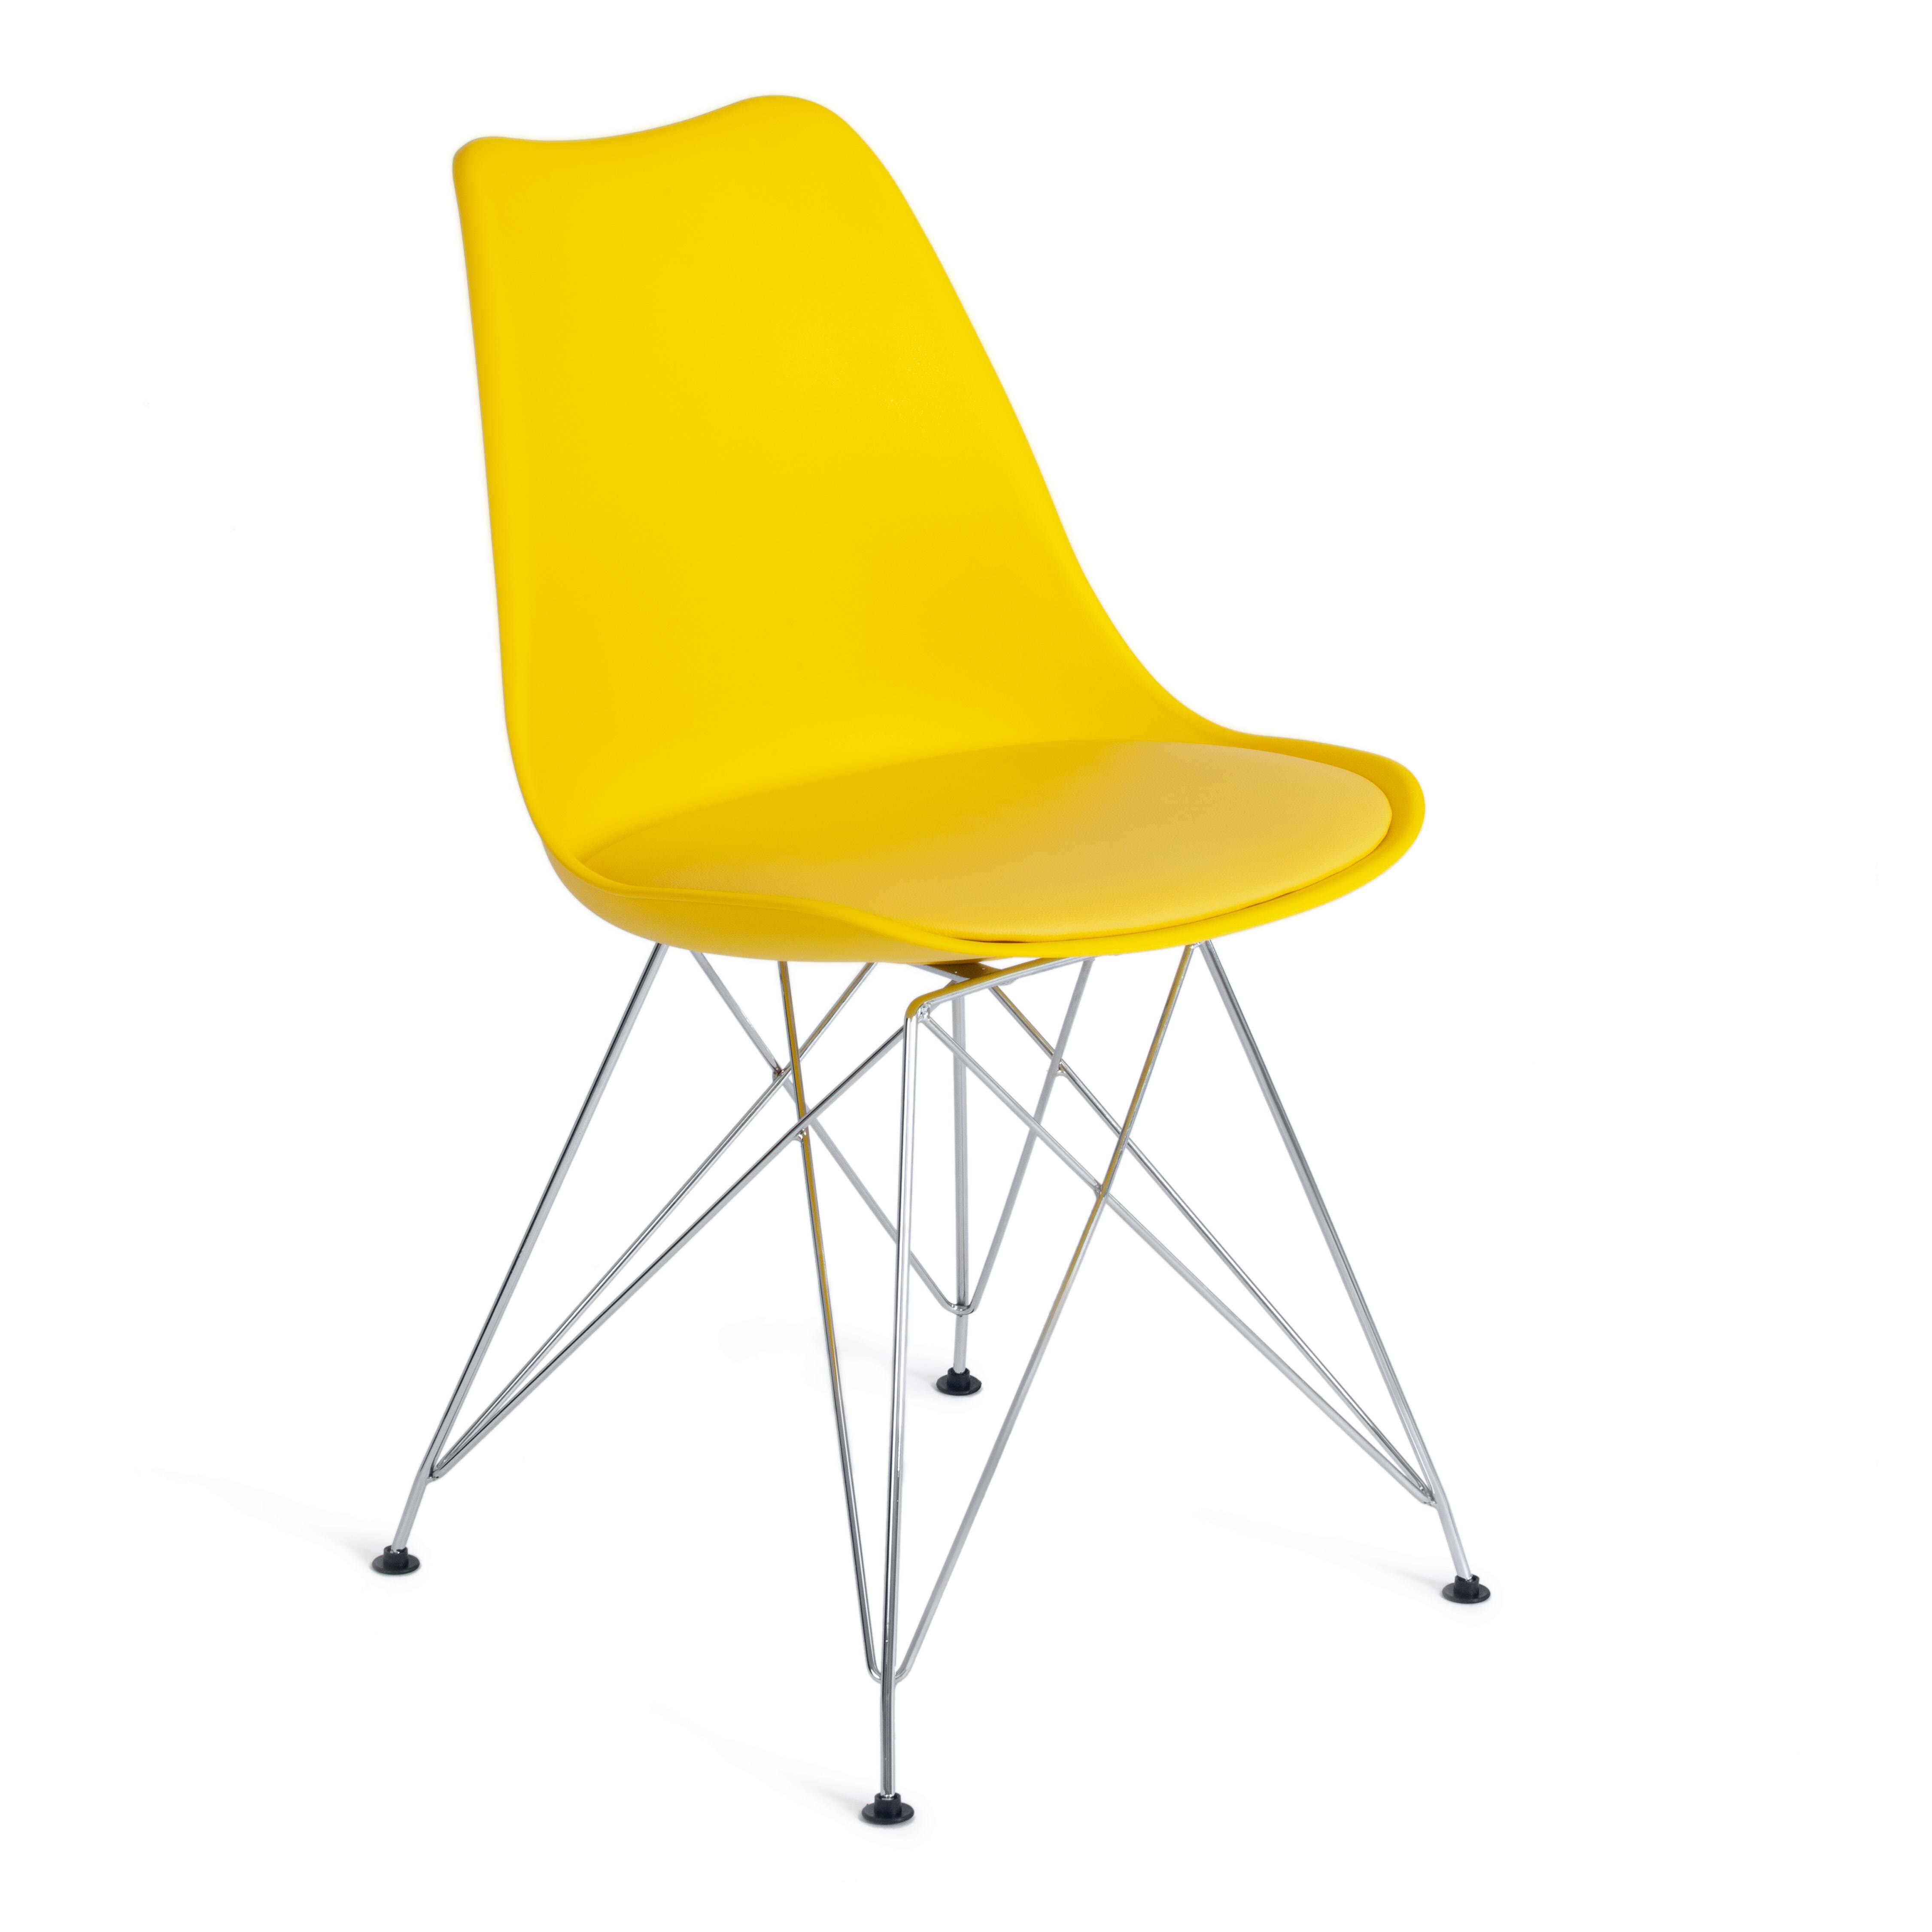 Стул пластиковый на металлических ножках желтый Tulip Iron Chair